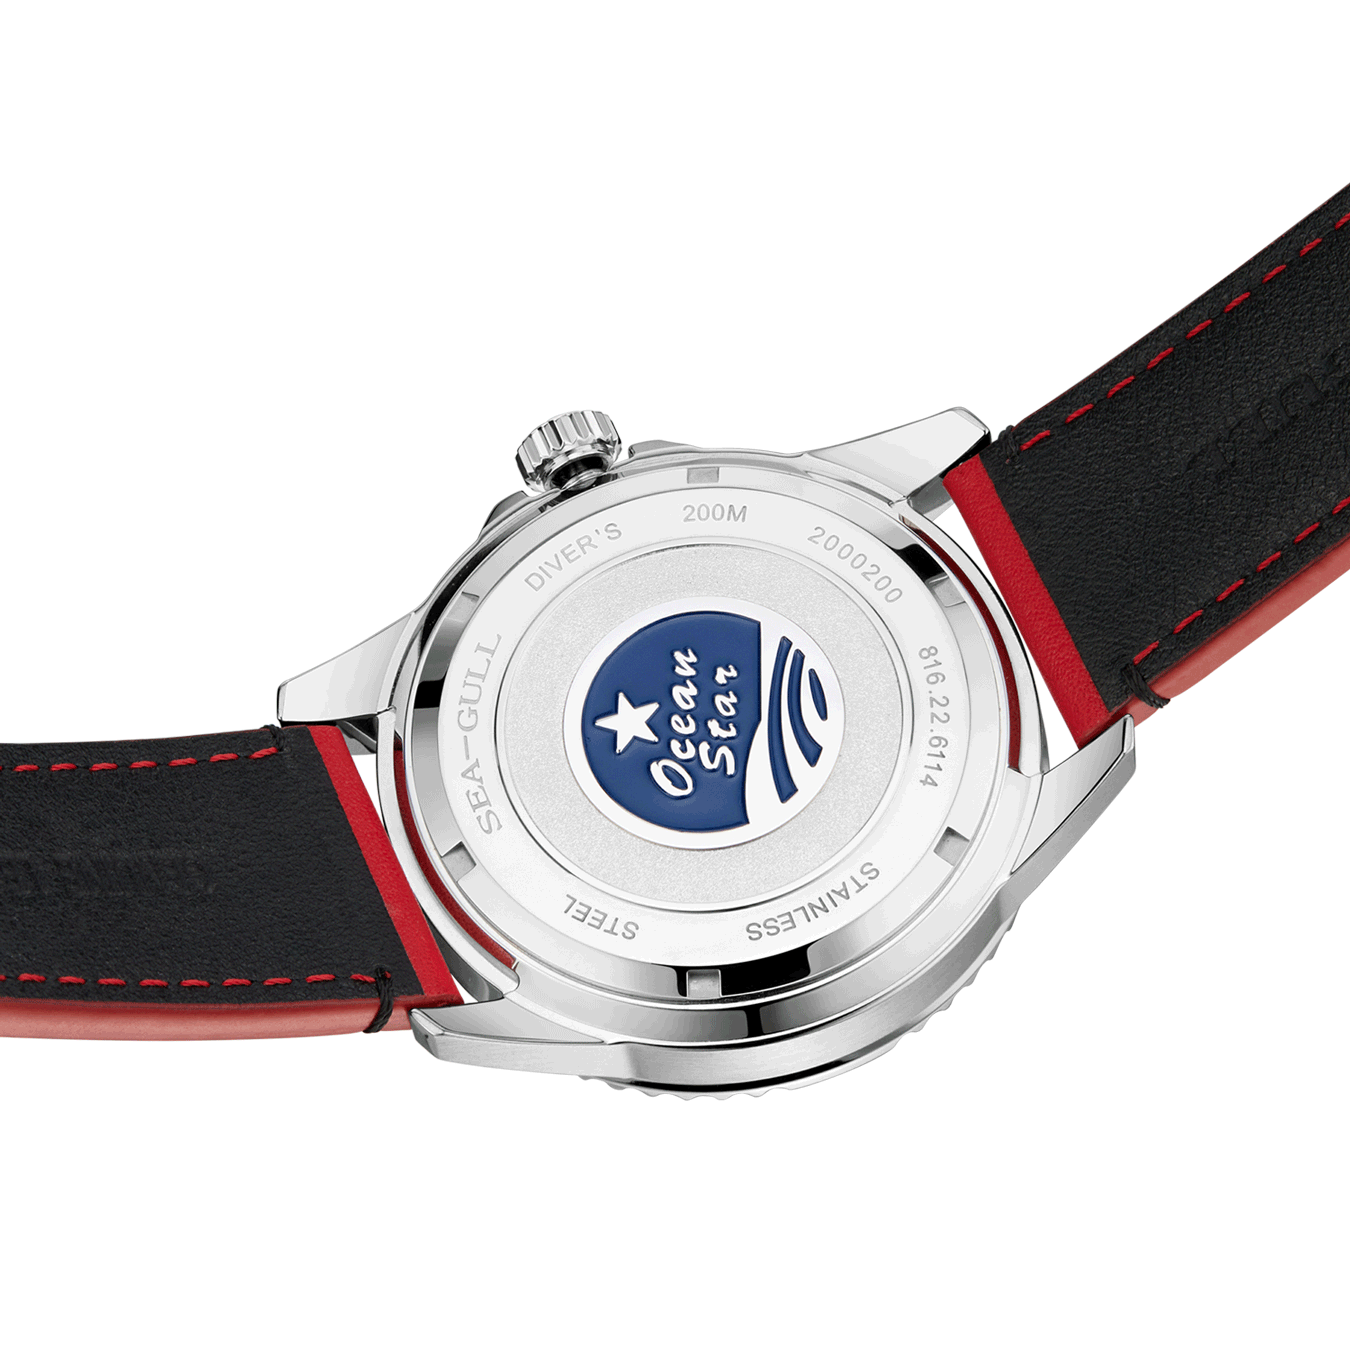 海鷗海洋之星黑紅邊框手錶